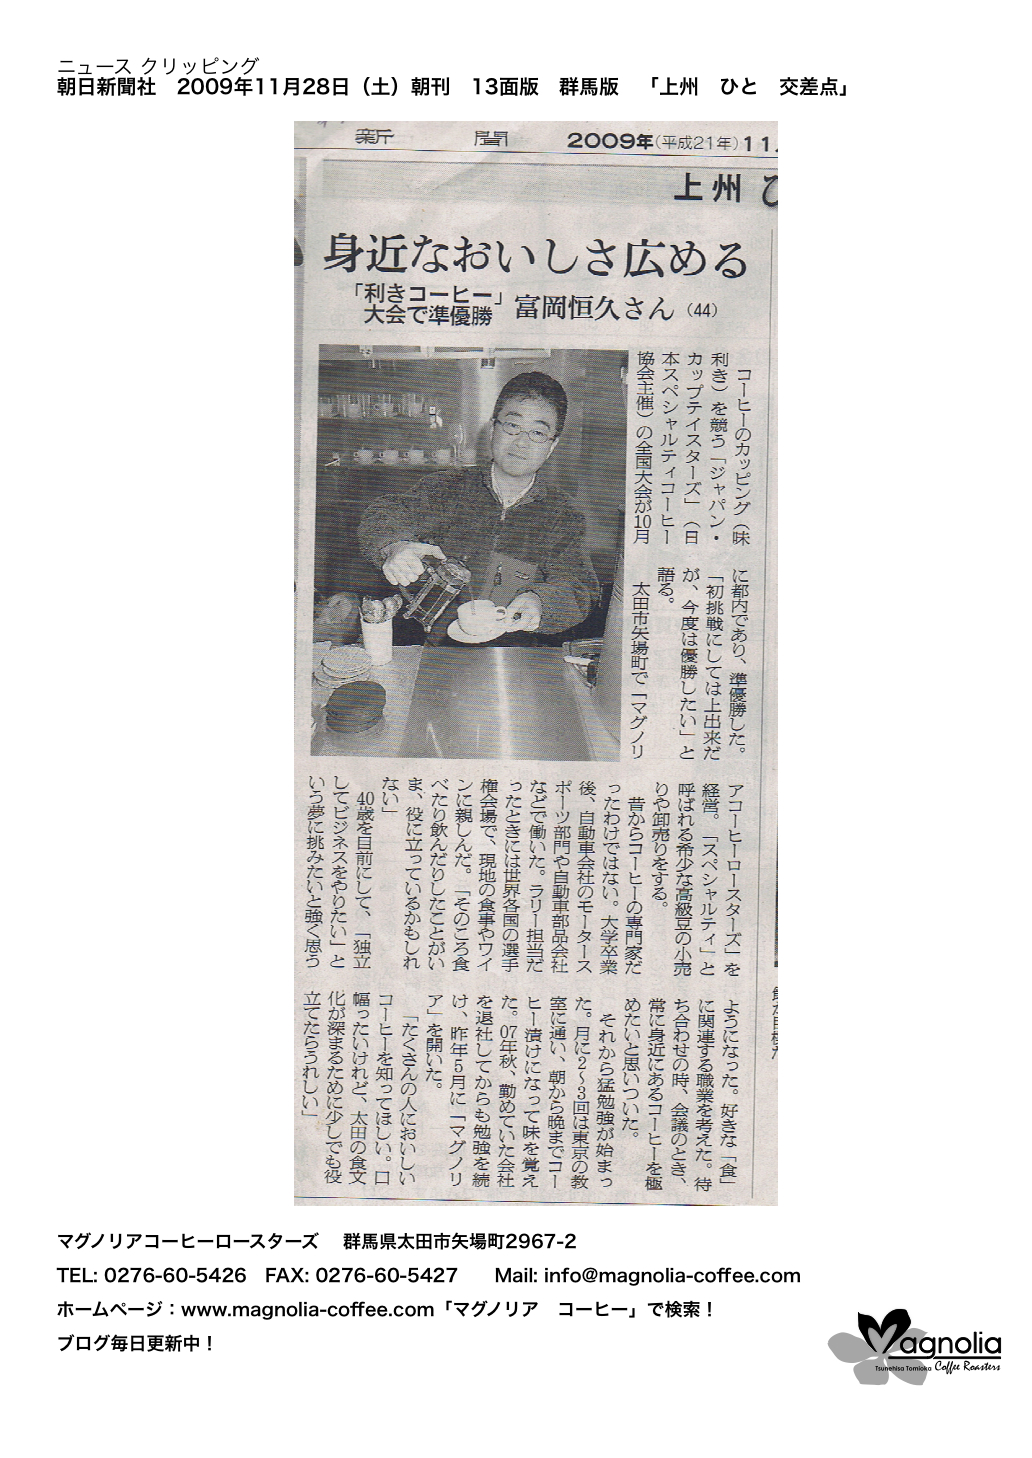 朝日新聞 群馬版に掲載の記事です スペシャルティコーヒー豆専門店 通販 マグノリア コーヒーロースターズ 群馬県太田市